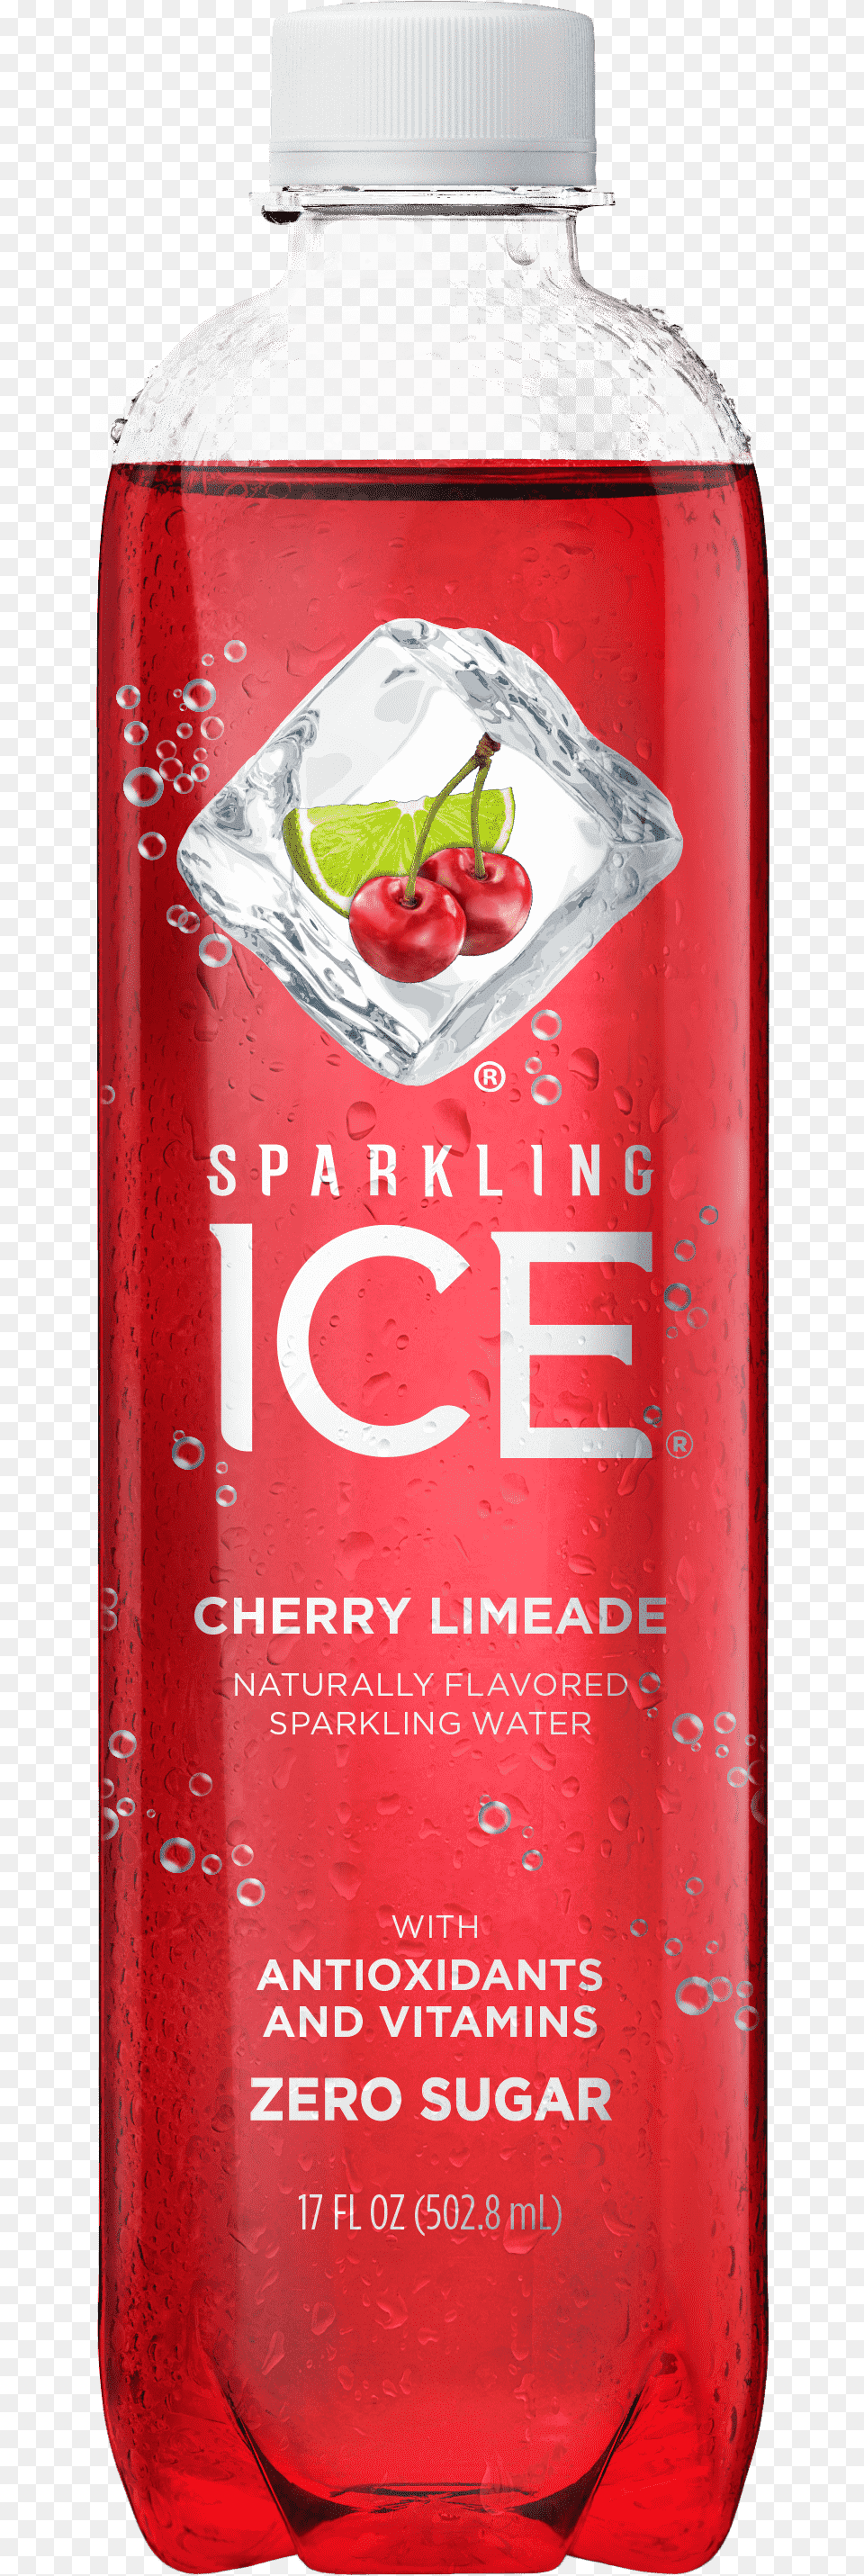 Strawberry Kiwi Ice Drink, Bottle, Shaker, Beverage Png Image